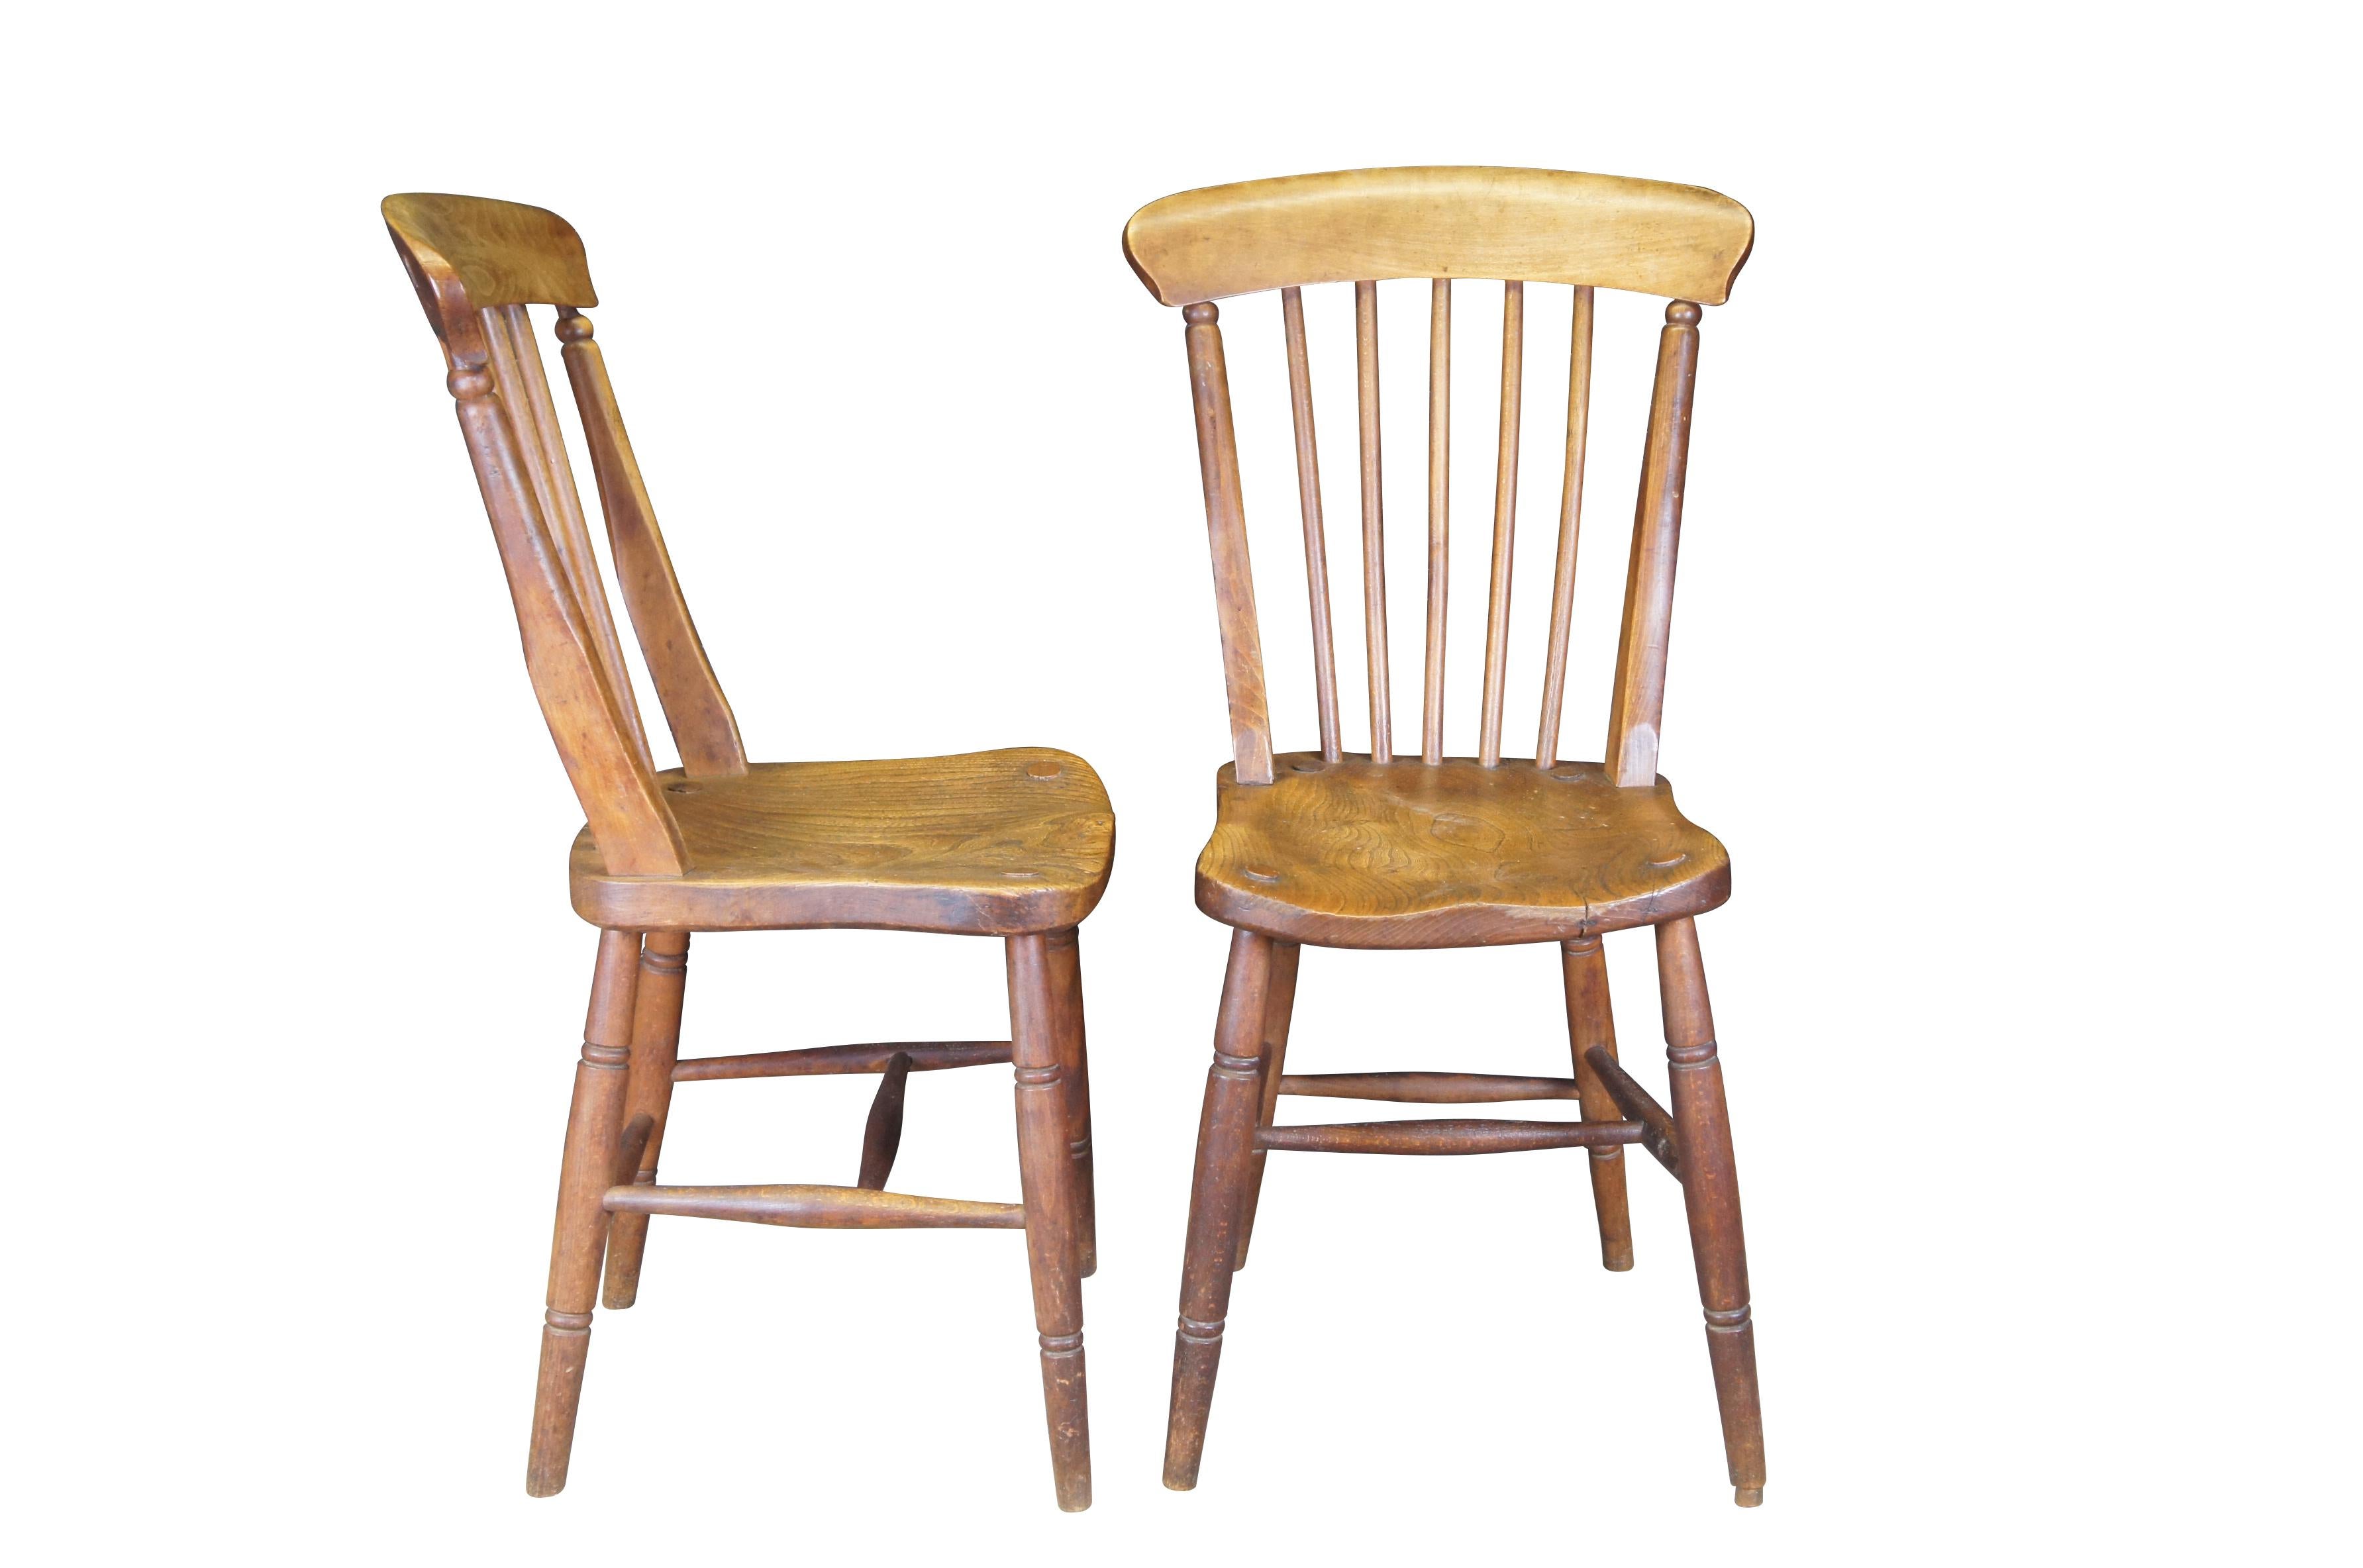 Six chaises de salle à manger anciennes en orme primitif Glenister de Wycombe en Angleterre.  Circa 19ème siècle.

L'entreprise Thomas Glenister 
Temple End, High Wycombe, Buckinghamshire ; fabricant de chaises (né en 1837-c.1891)

Glenister's a été